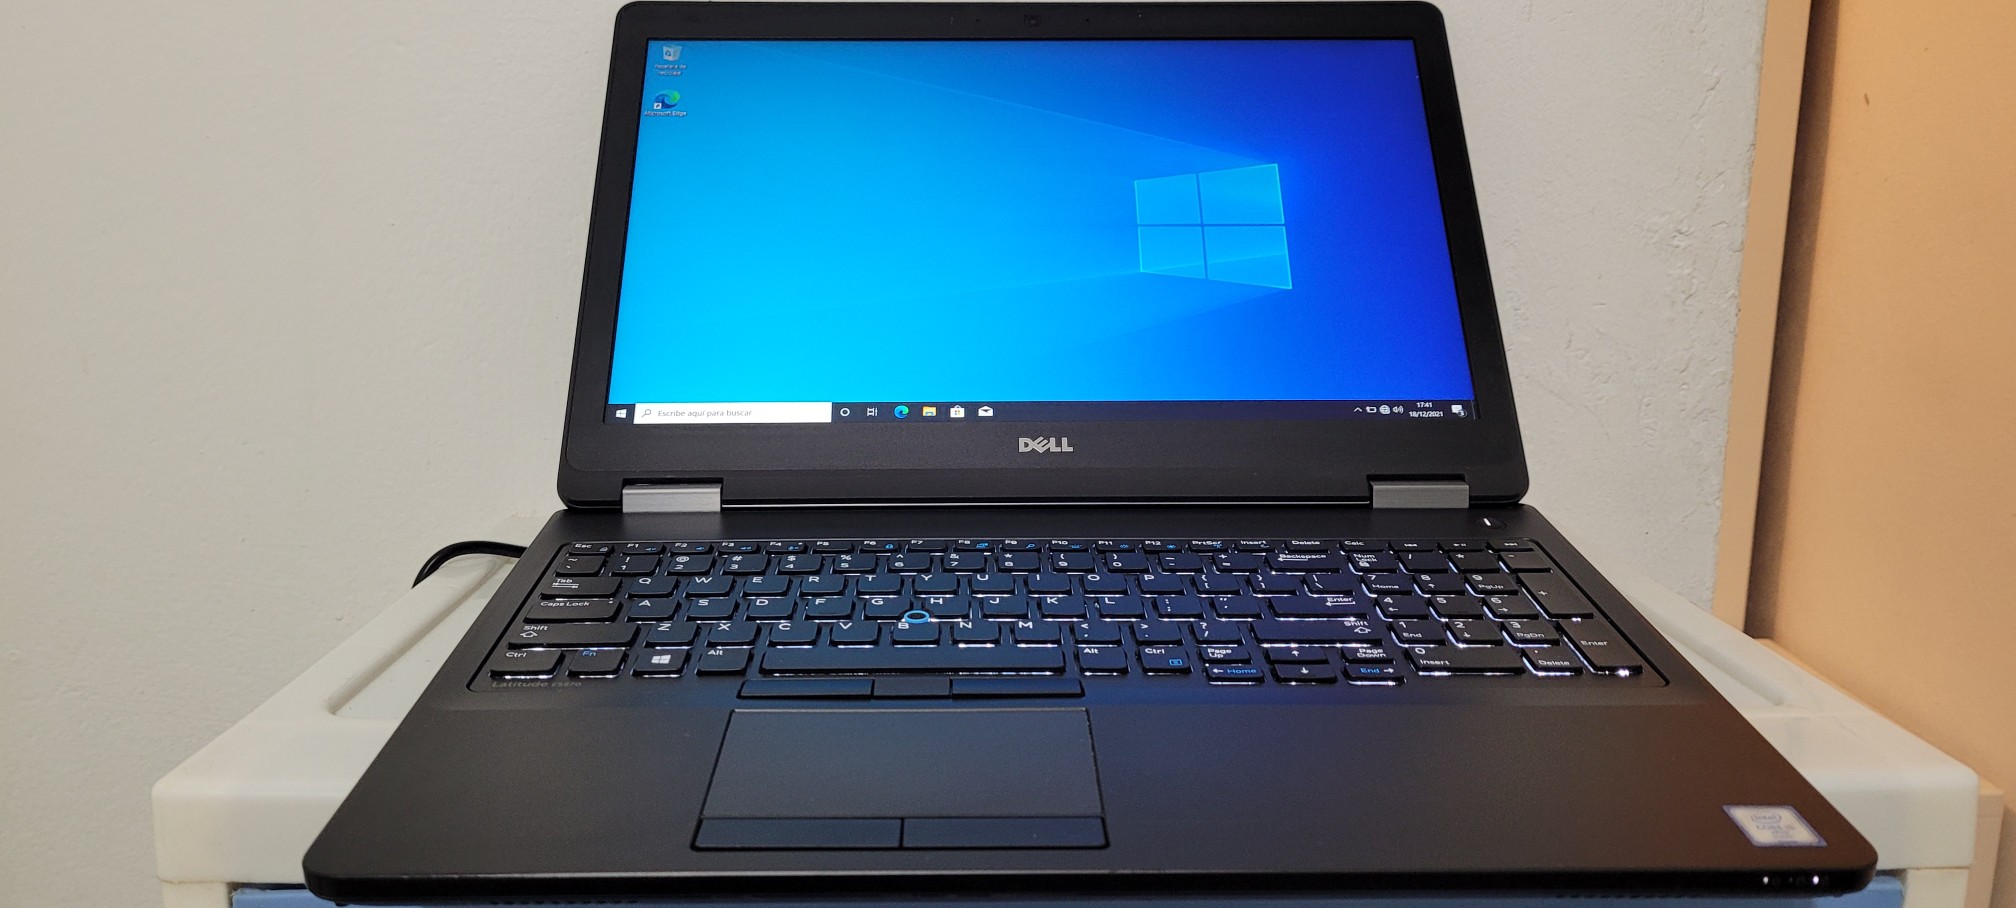 computadoras y laptops - Dell 5570 17 Pulg Core i5 6ta Ram 8gb ddr4 Disco 128gb Y 500gb Full